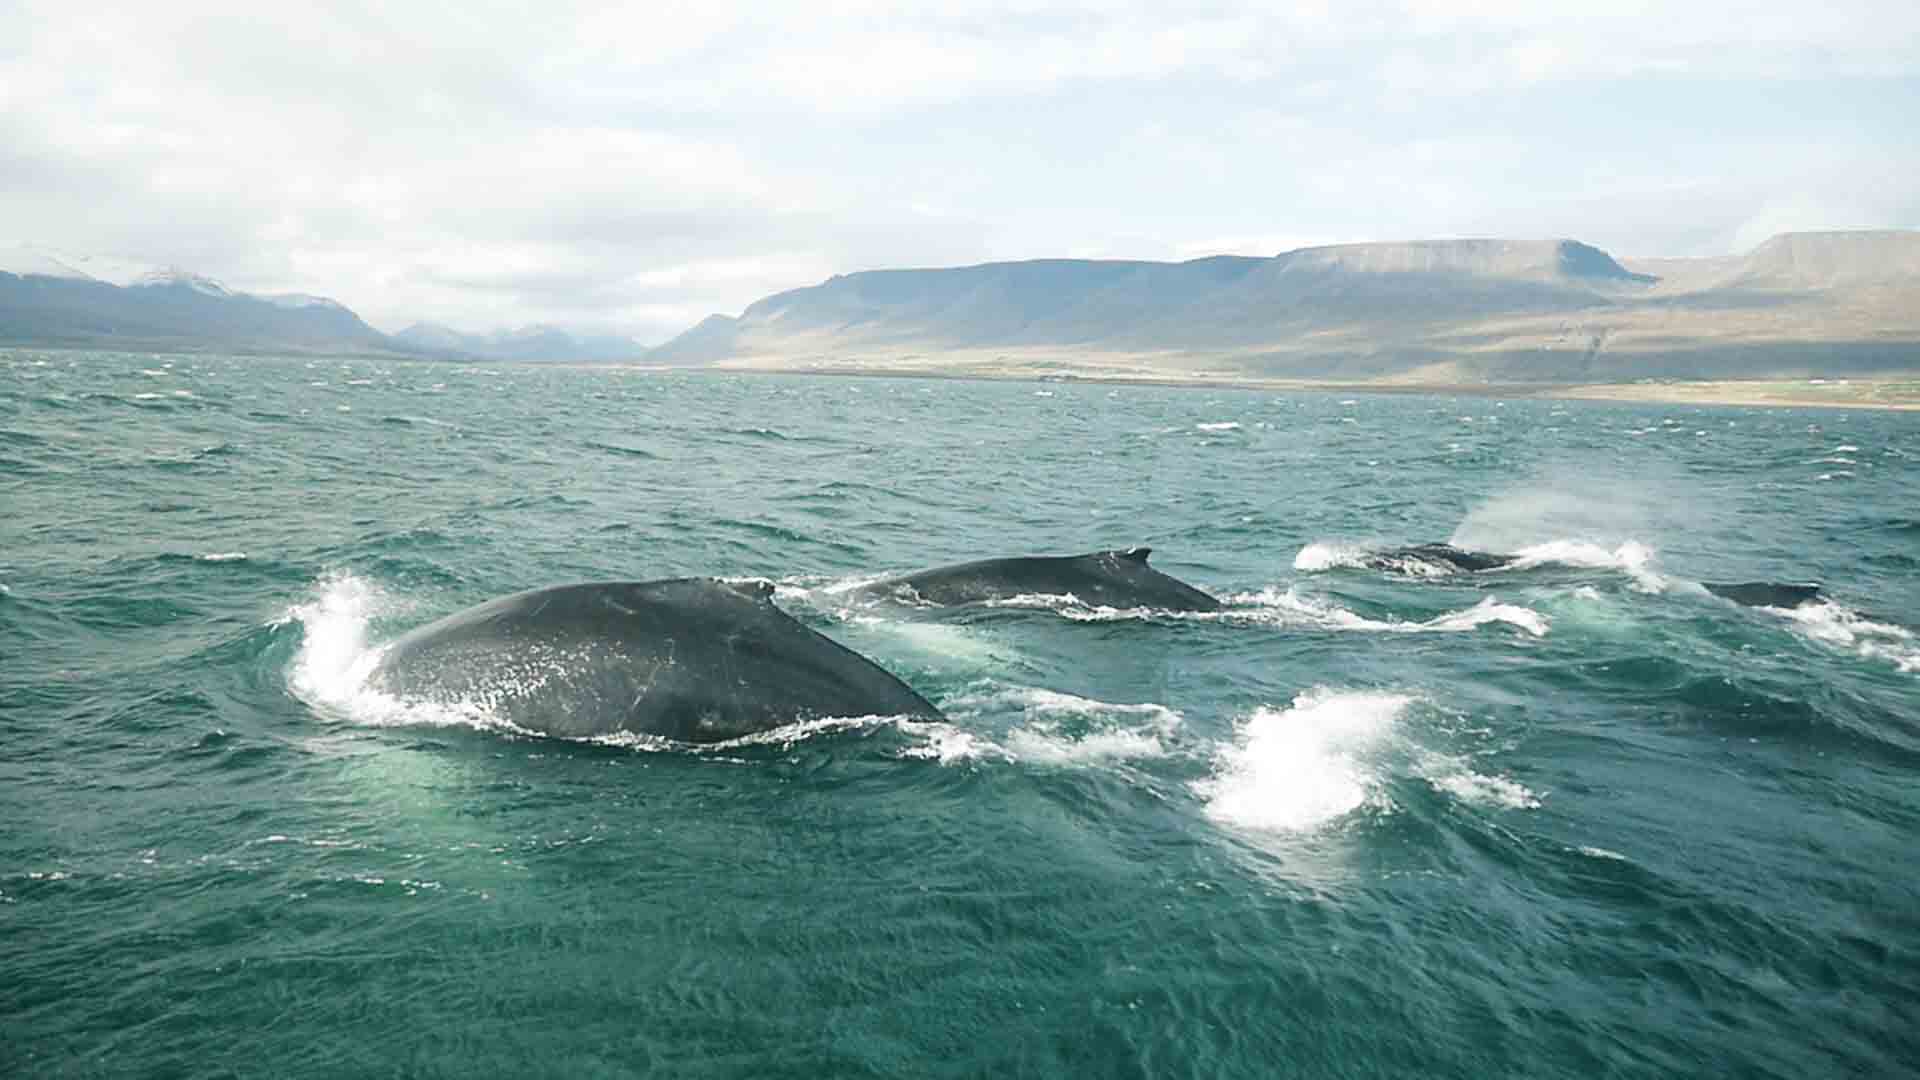 Acabar con la caza descontrolada de ballenas supone un desafío para la conservación de ballenas para mitigar los efectos del cambio climático